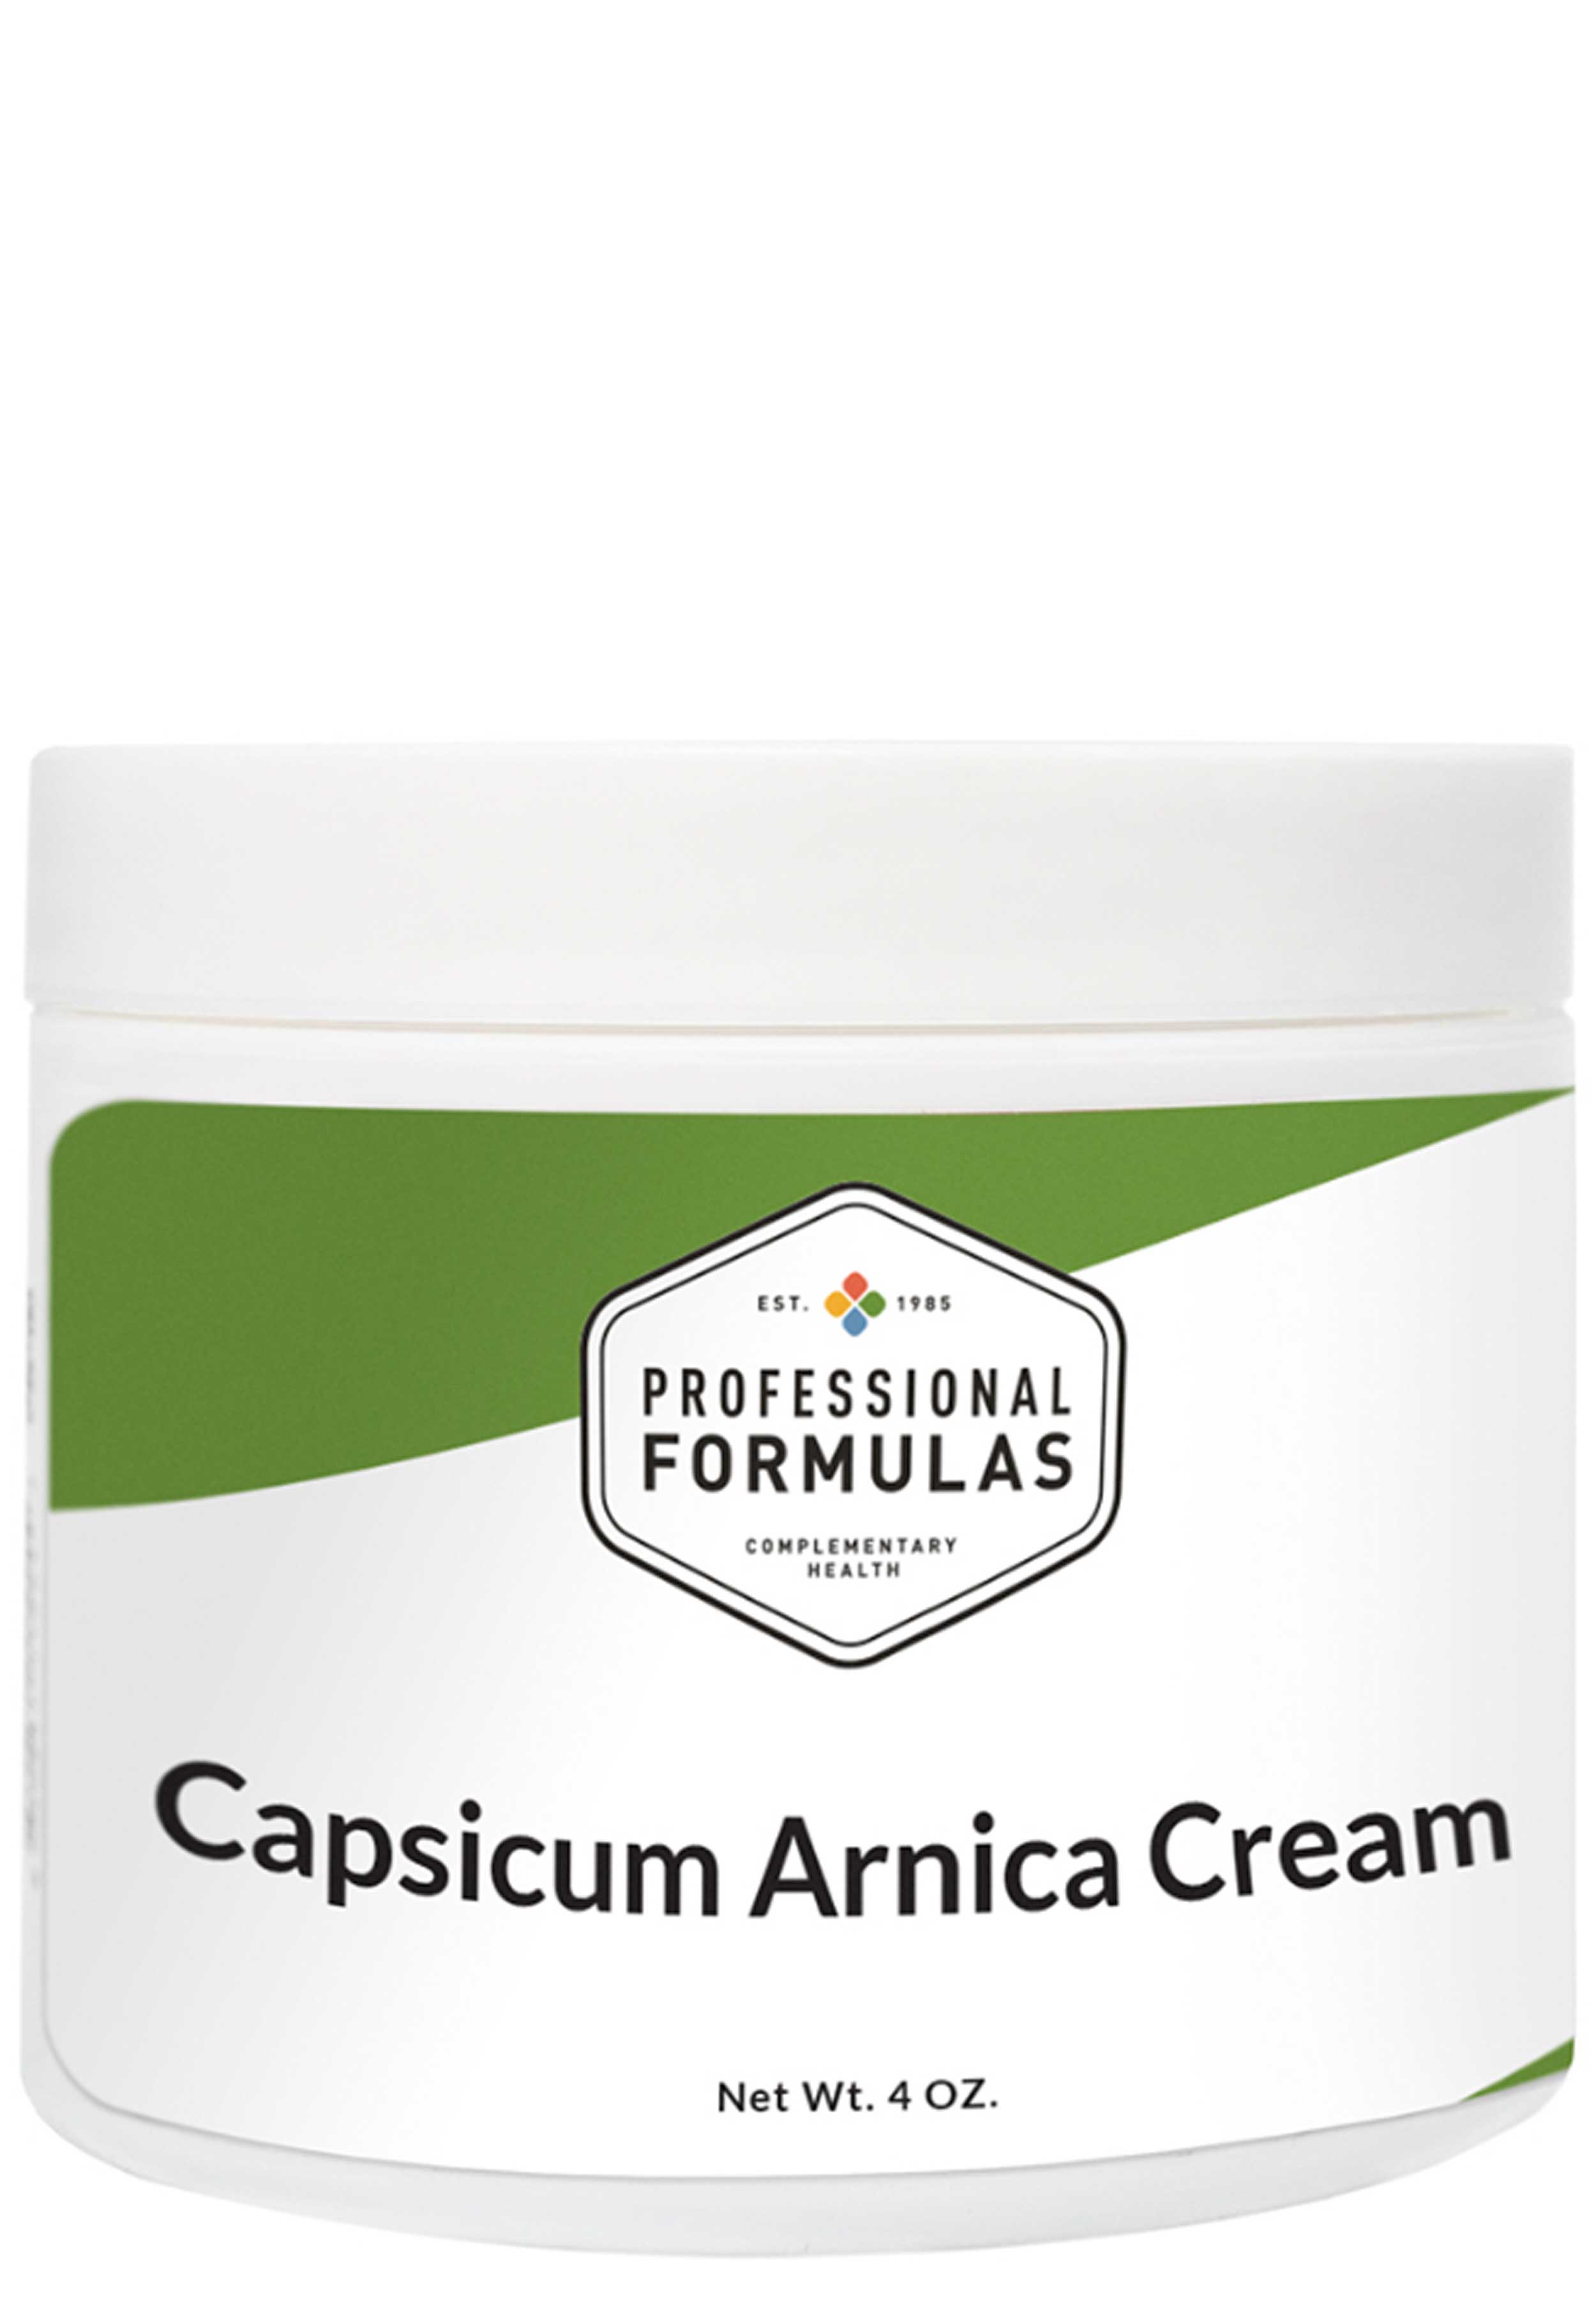 Professional Formulas Capsicum Arnica Cream